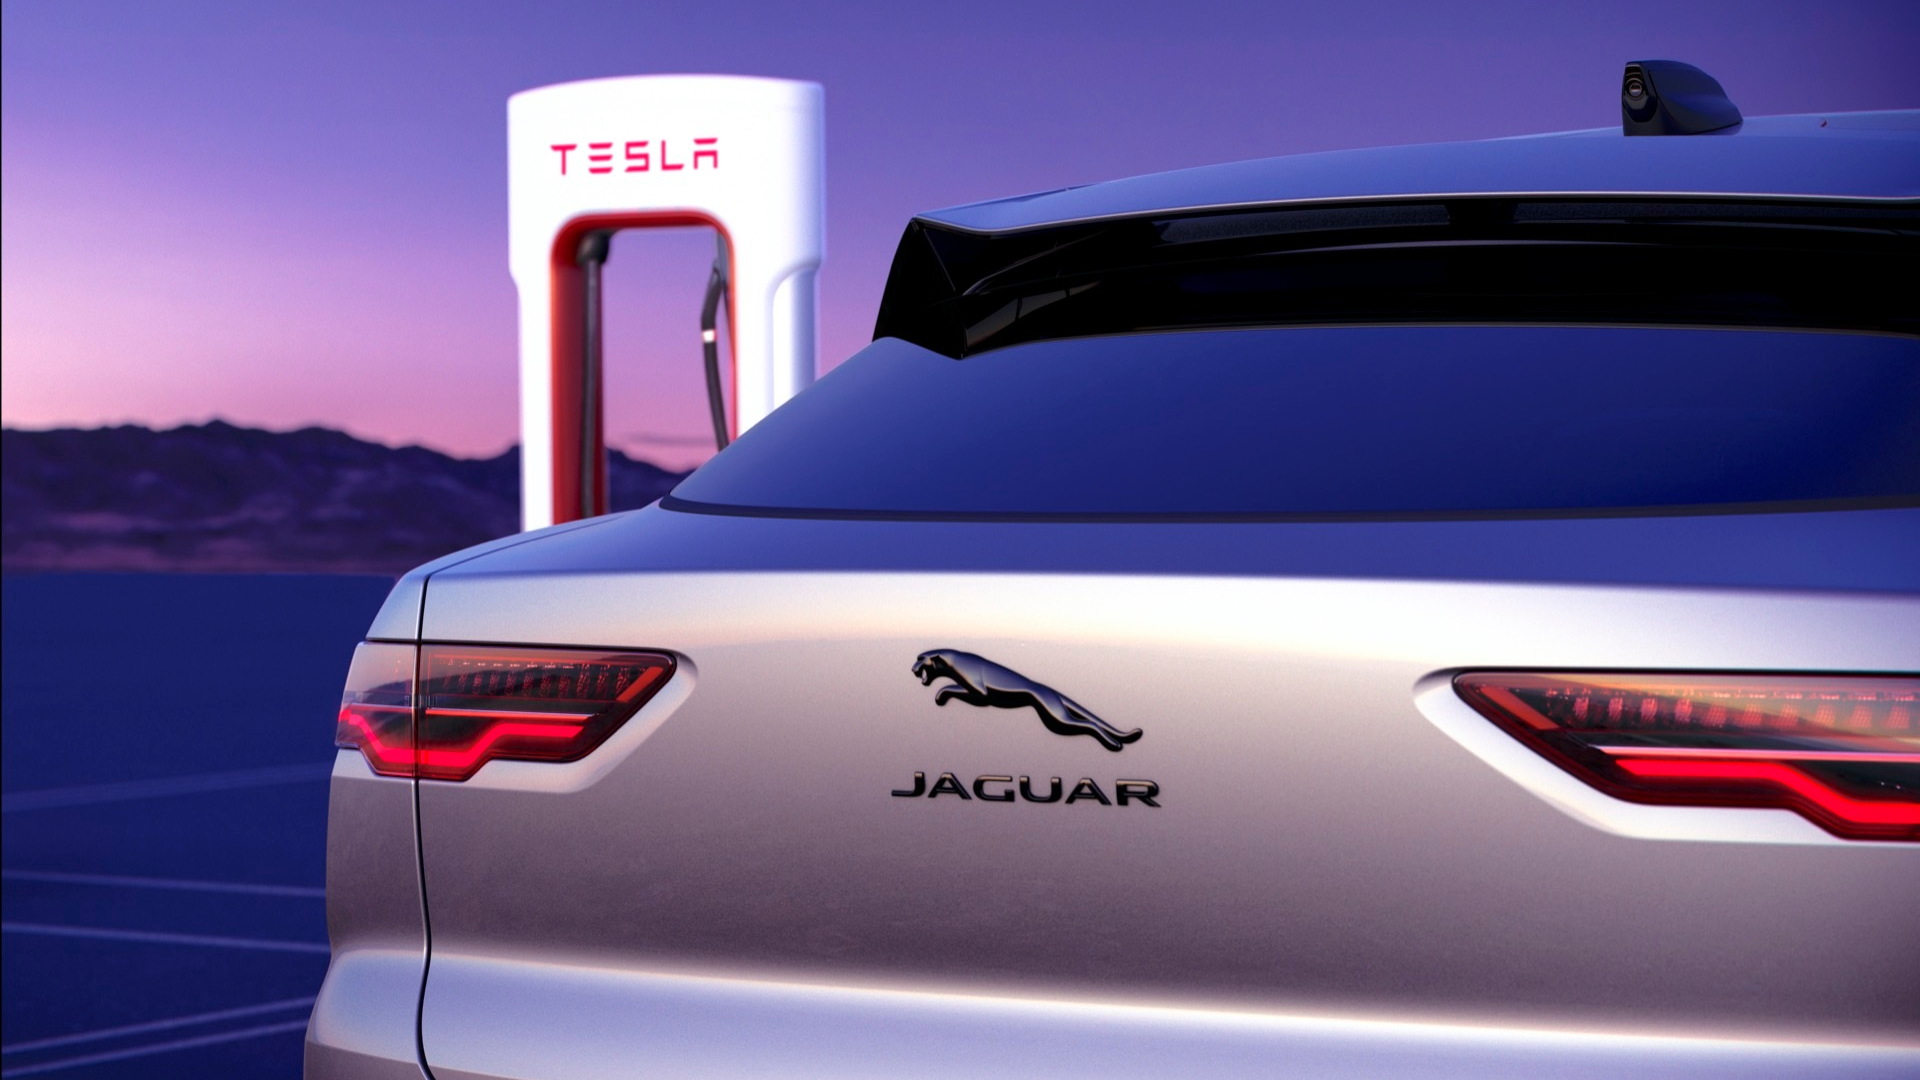 Jaguar I-Pace and Tesla Supercharger station